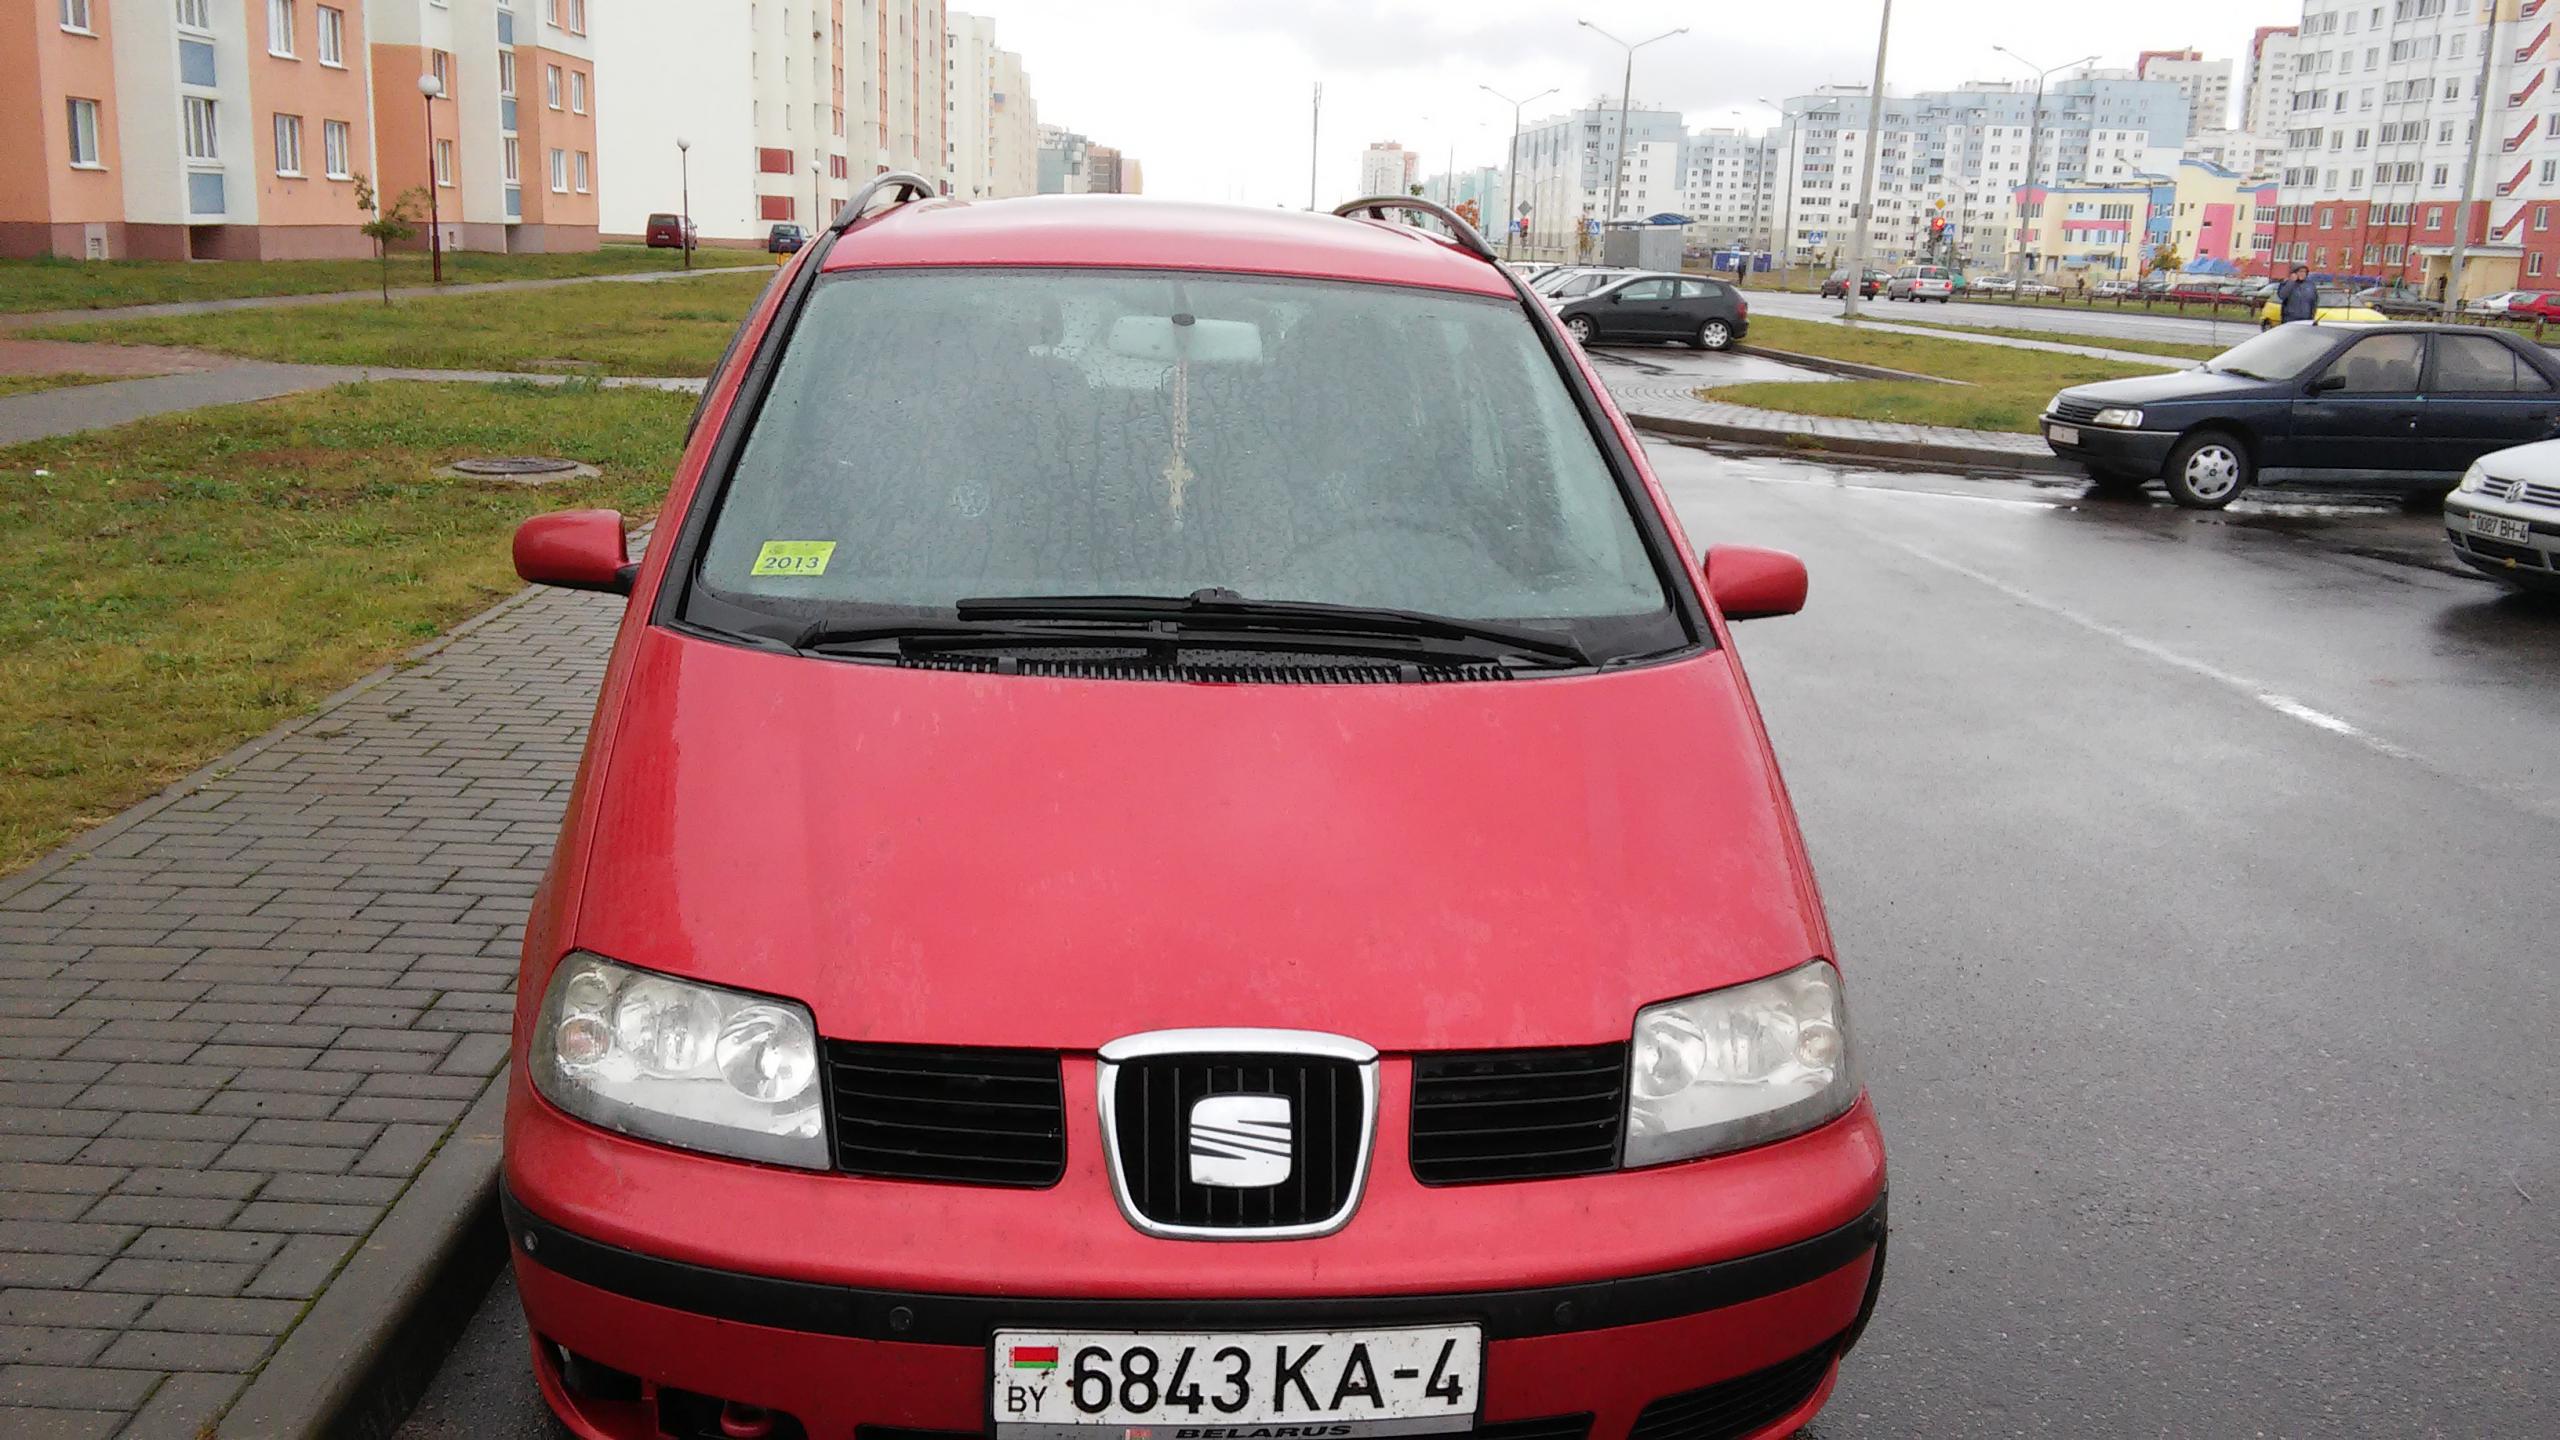 Купить легковой авто в белоруссии